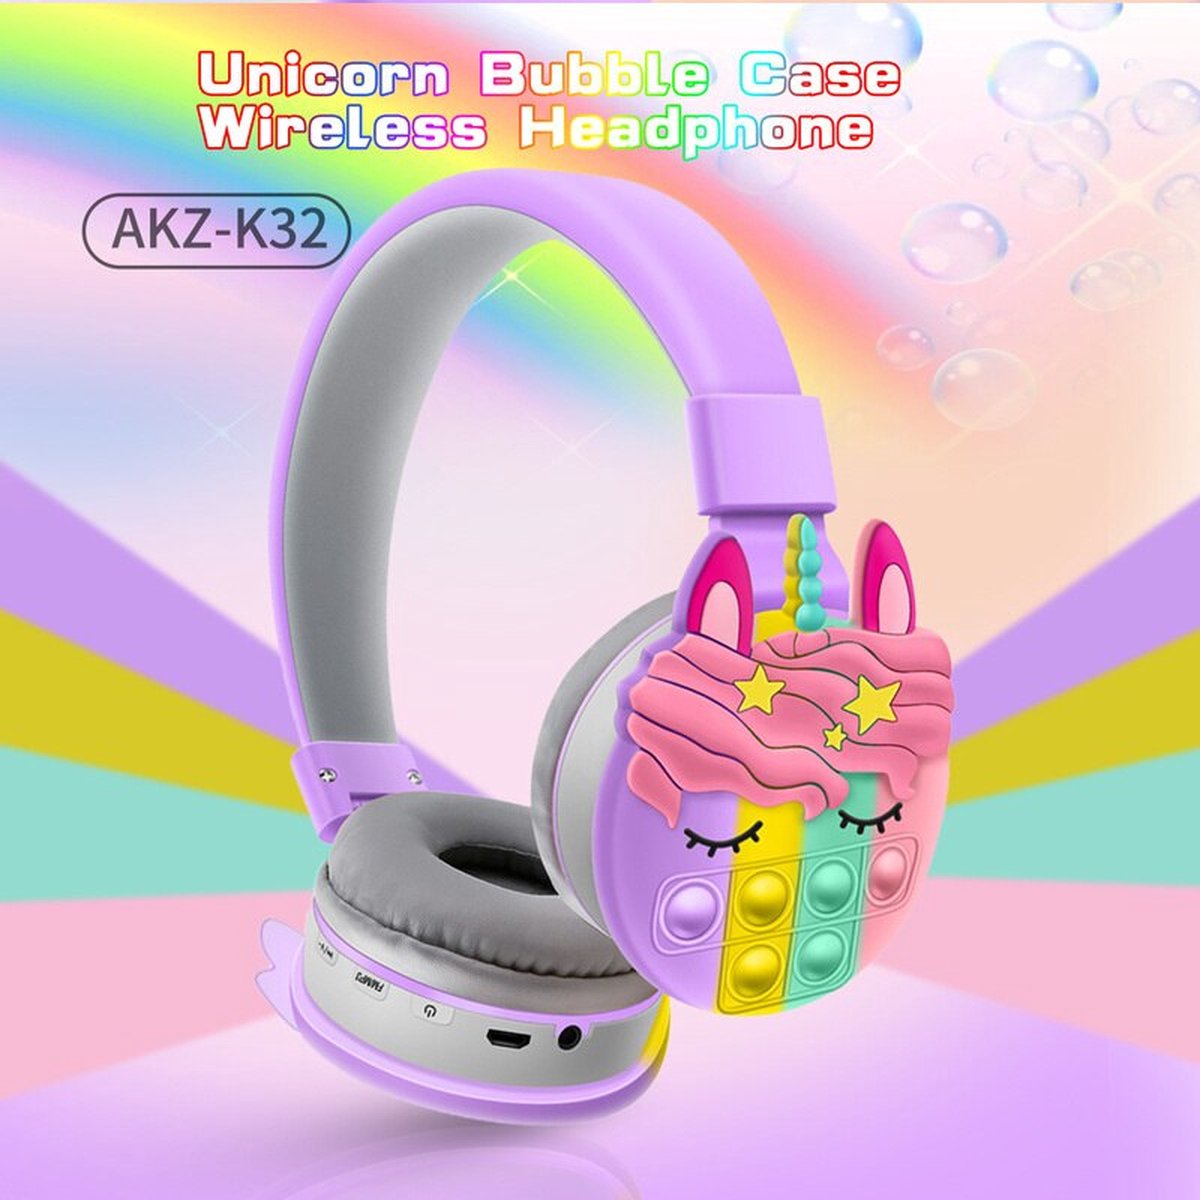 Headset-Hoofdtelefoon-Bluetoot headset-Kinderhoofdtelefoon-draadloos Headset-kids-kinderen hoofdtelefoon-fidget-pop it-kleuren hoofdtelefoon